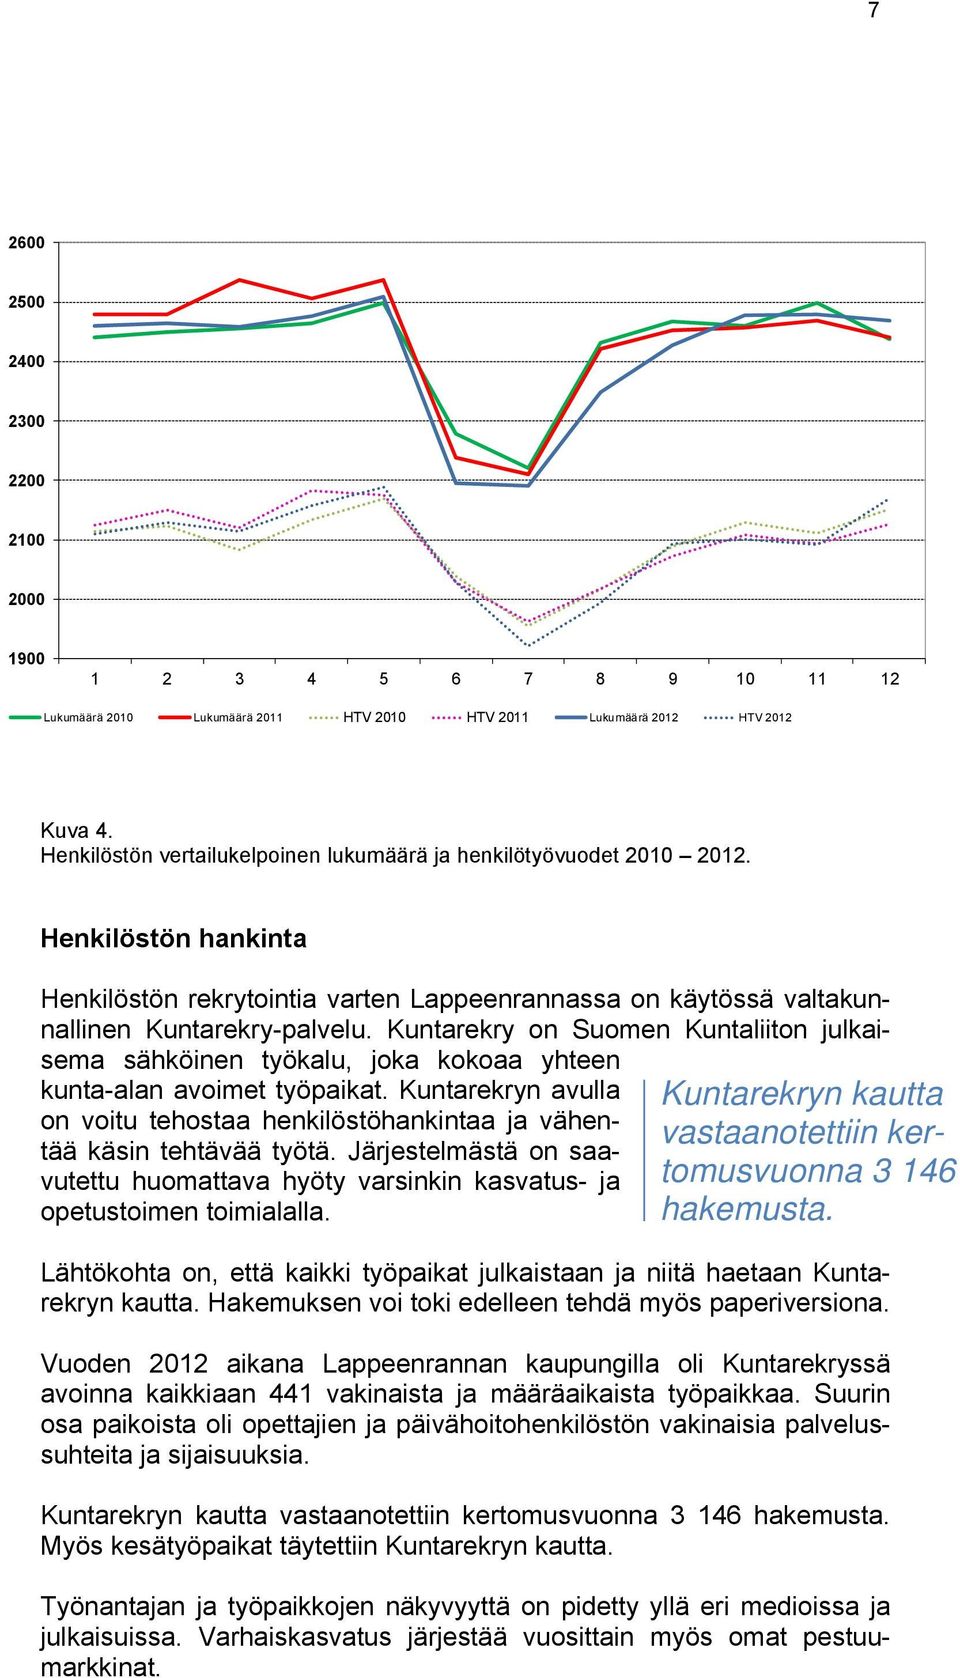 Kuntarekry on Suomen Kuntaliiton julkaisema sähköinen työkalu, joka kokoaa yhteen kunta-alan avoimet työpaikat.